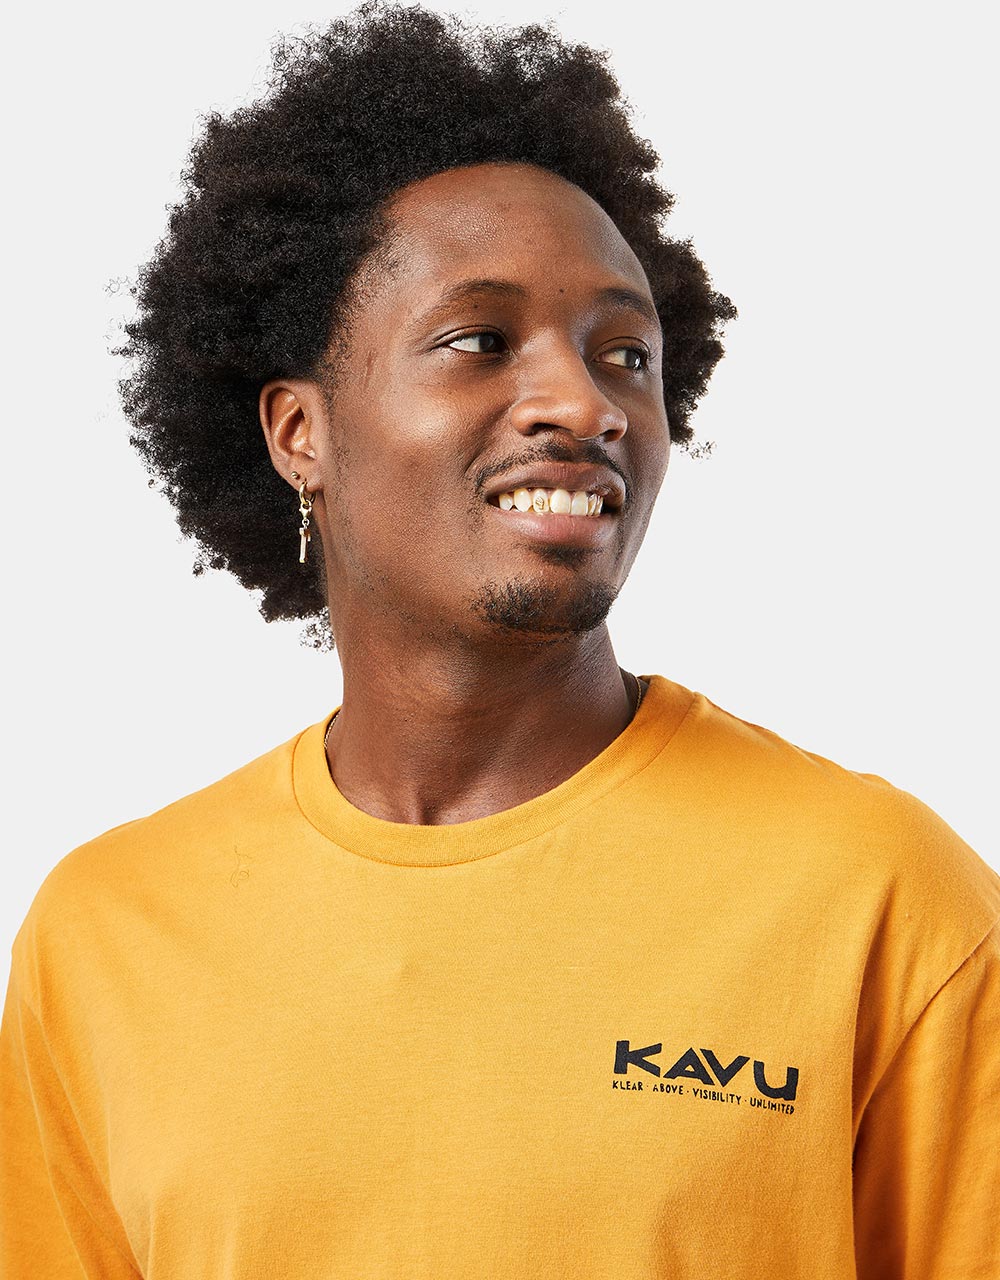 Kavu Klear Above Etch Art - Butterscotch